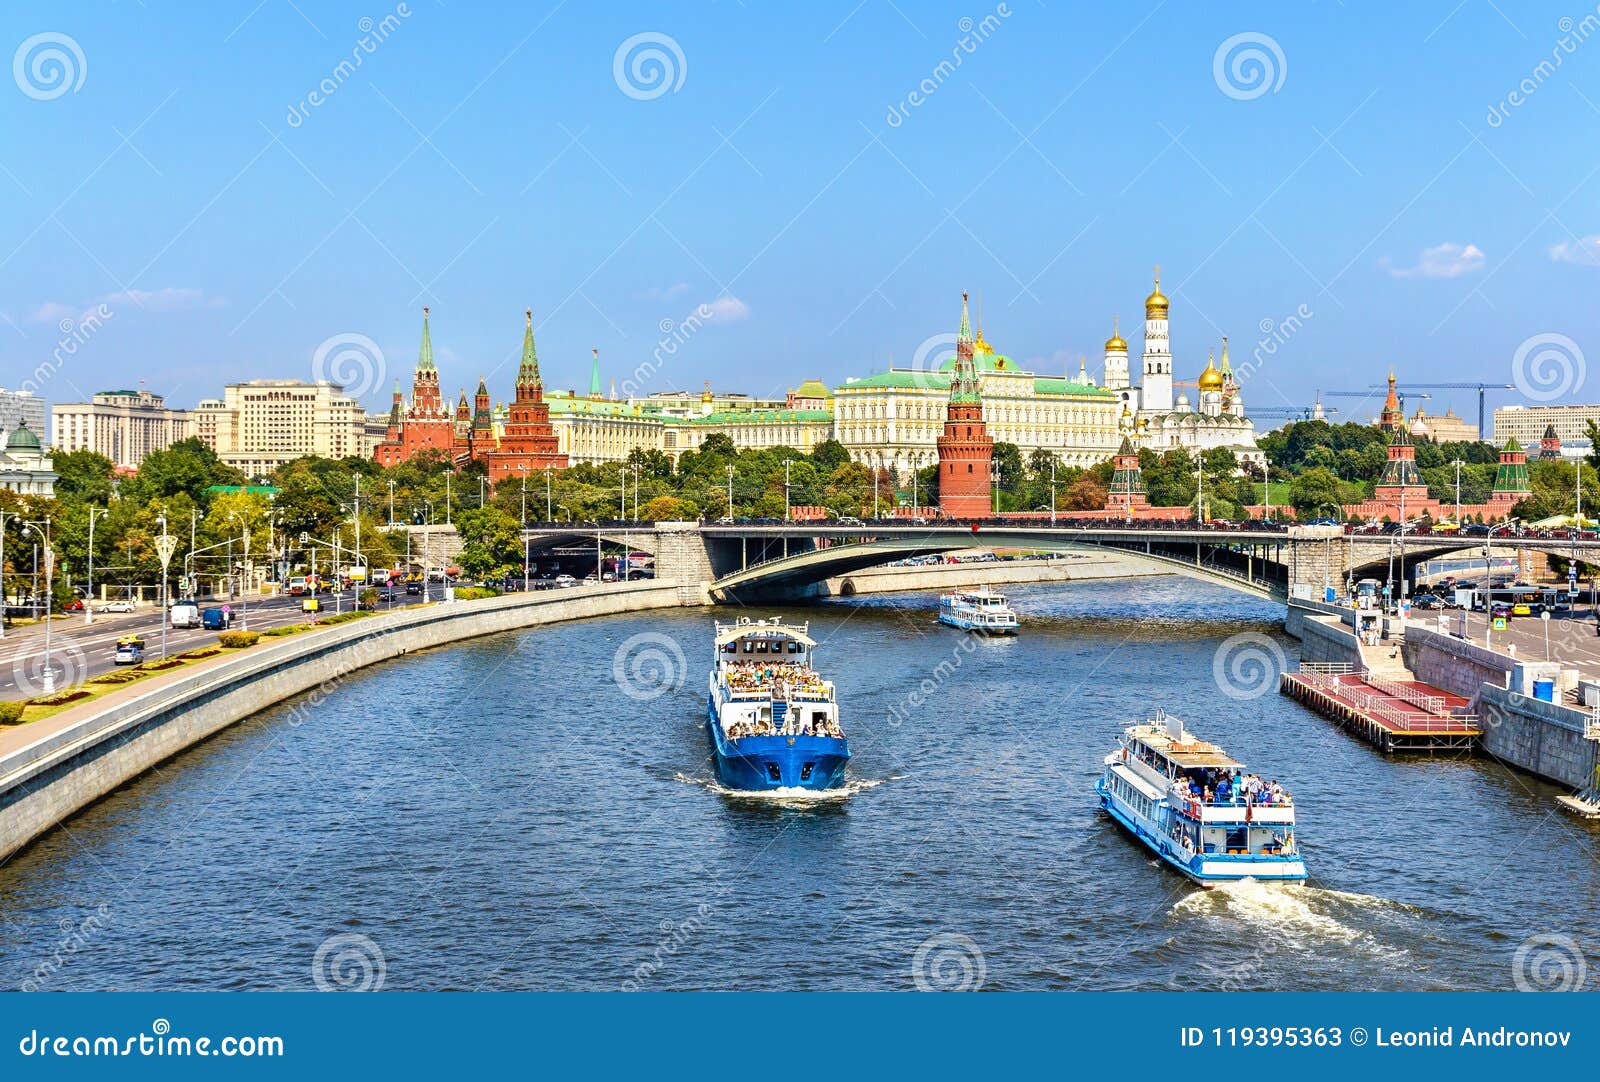 Москва река основная мысль. Фотообои Москва река. Москва река 4. Панорама Москвы по Москве реке. Москва река на английском.